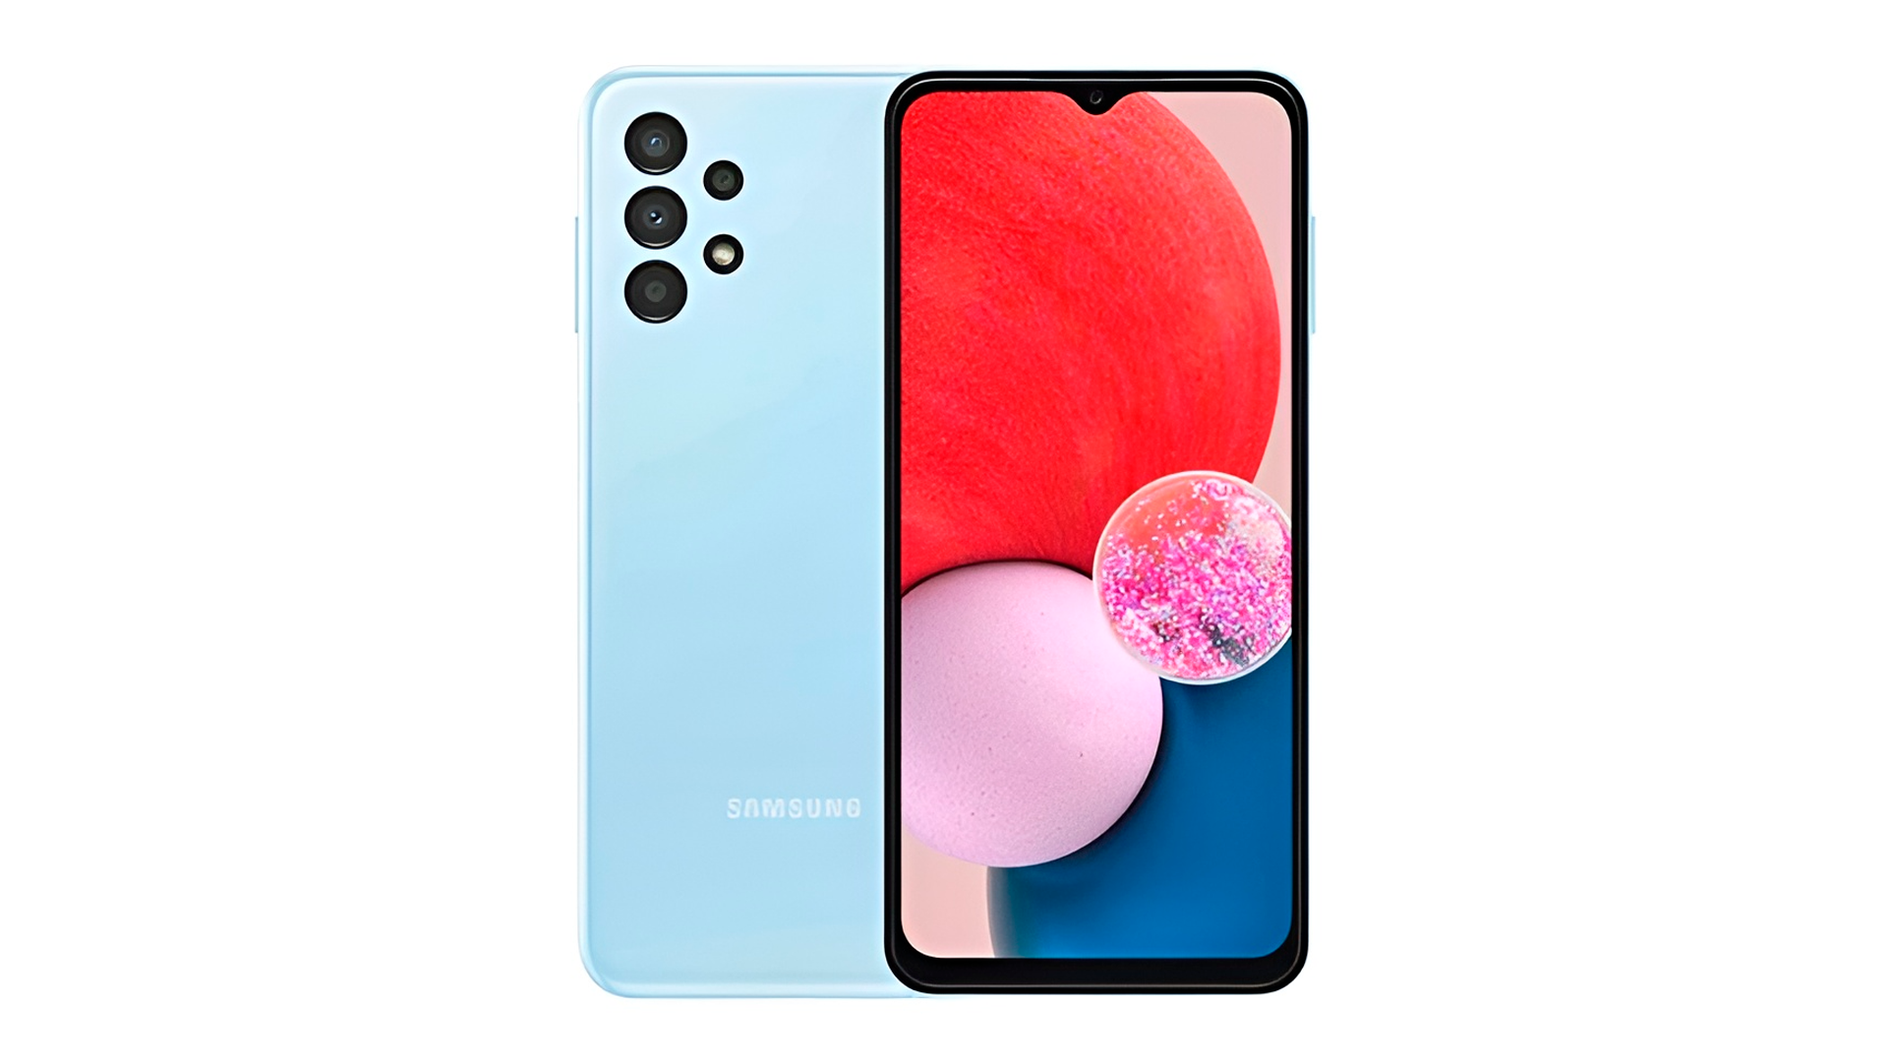 Samsung Galaxy A13, очень хороший недорогой телефон Samsung, обладает экраном с высоким разрешением и мощным 8-ядерным процессором.